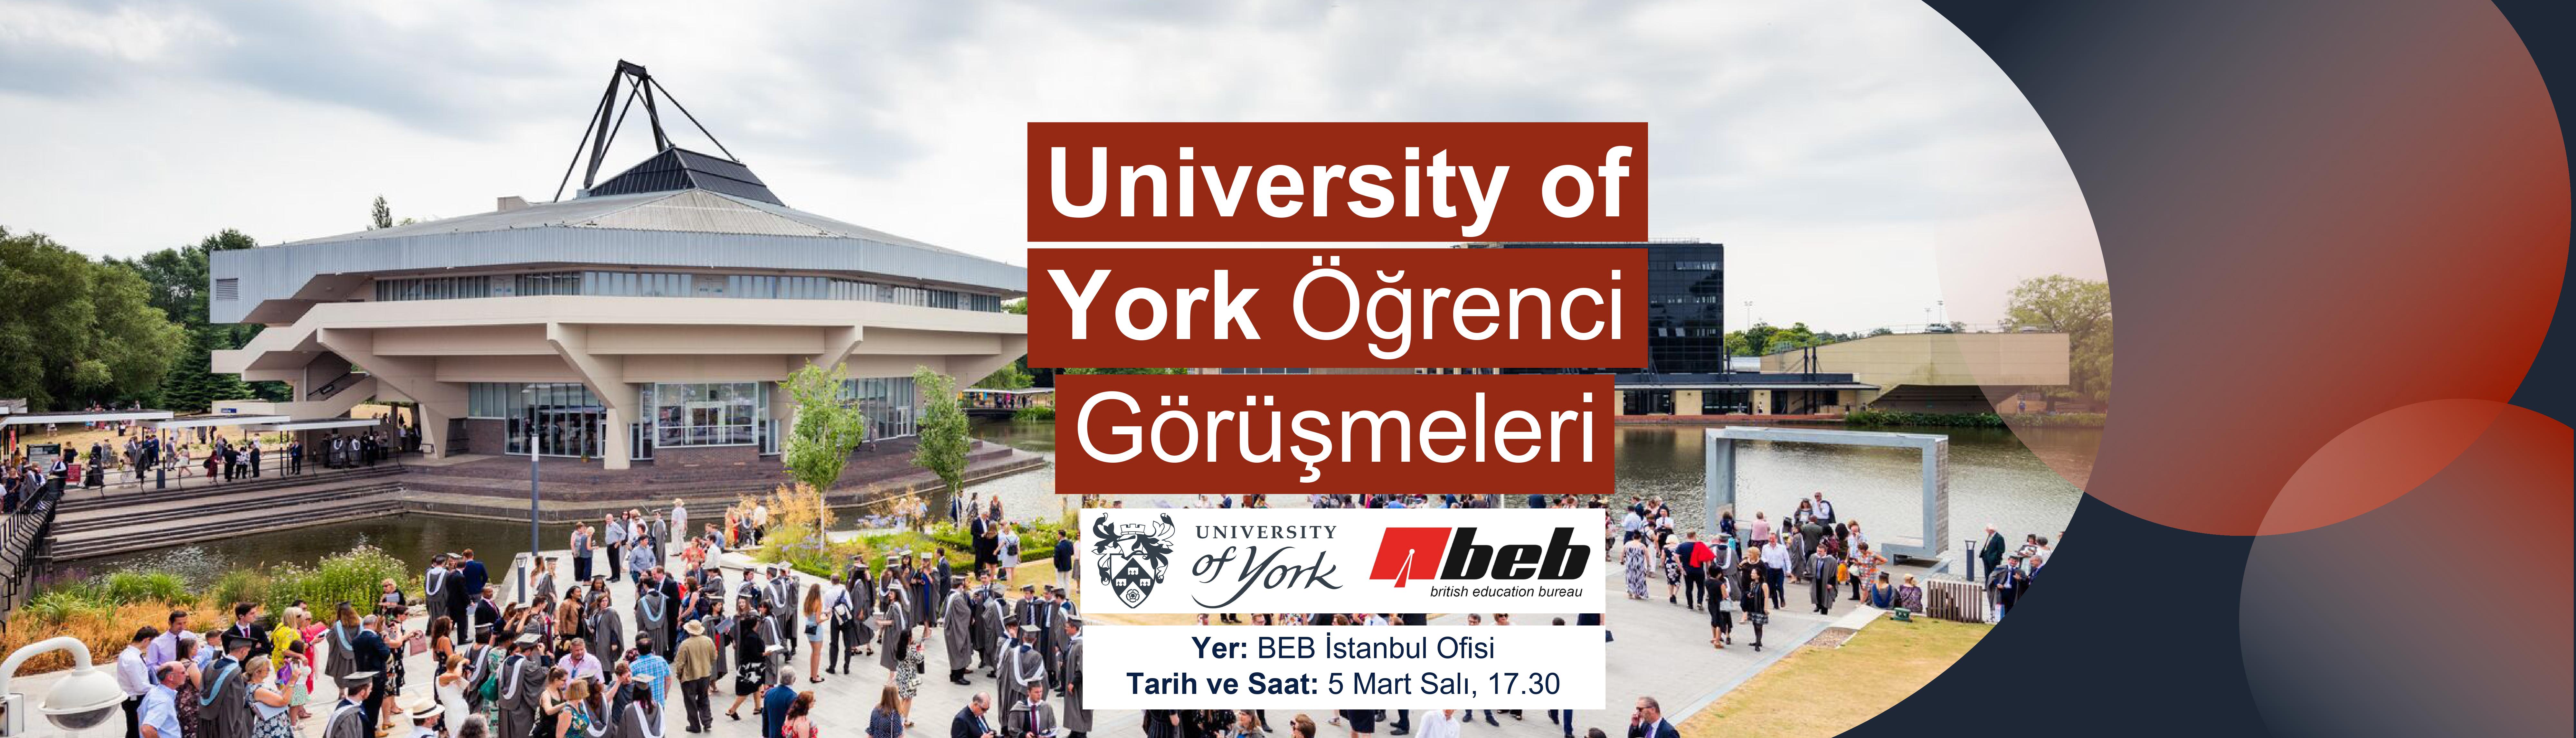 BEB-Istanbul-Ofisi-University-of-York-Ogrenci-Gorusmeleri